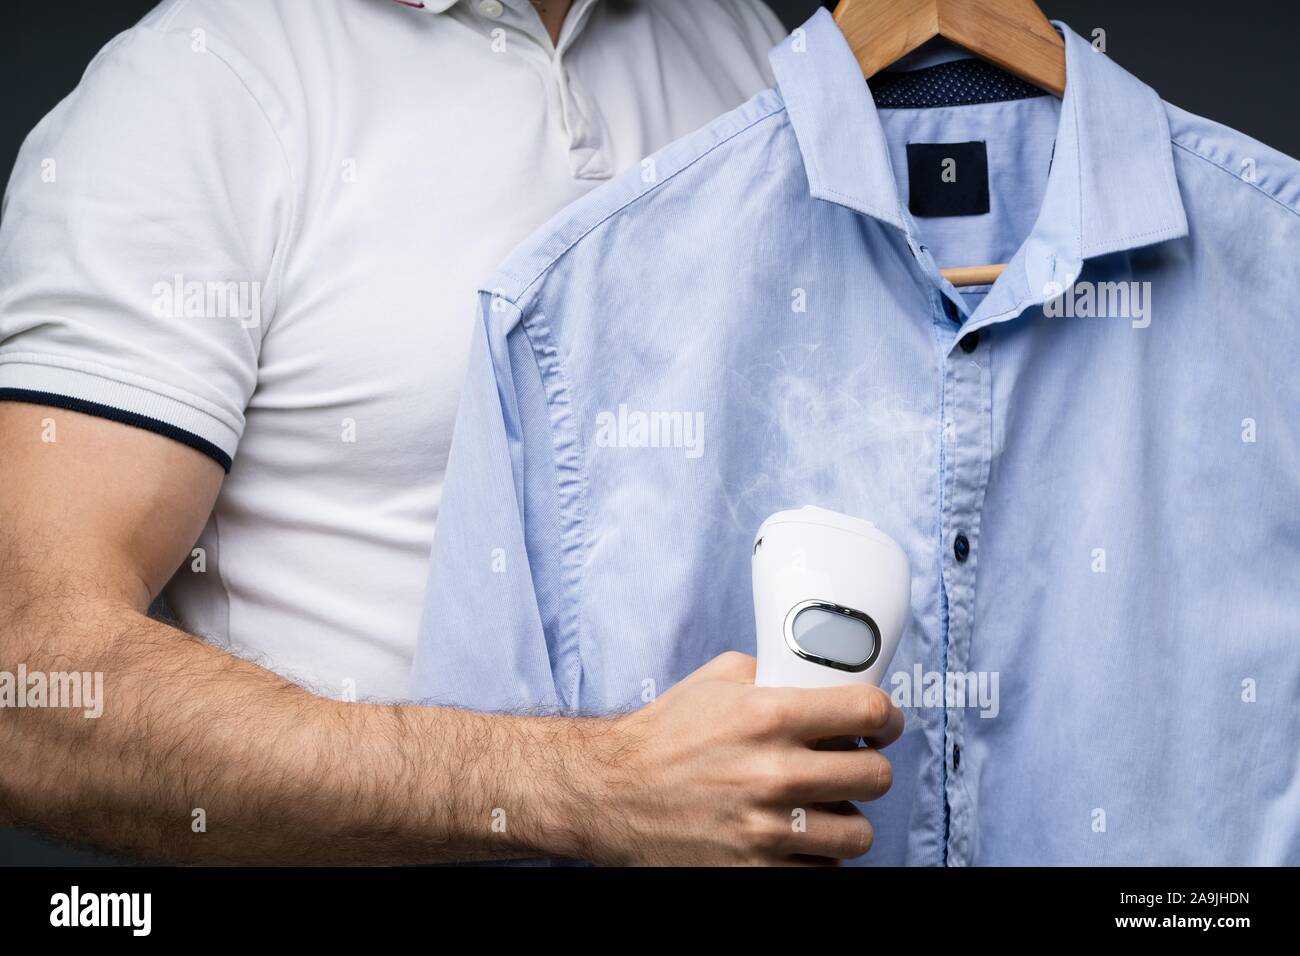 Close-up de un Camisa azul de mediante vapor eléctrico Fotografía de stock -